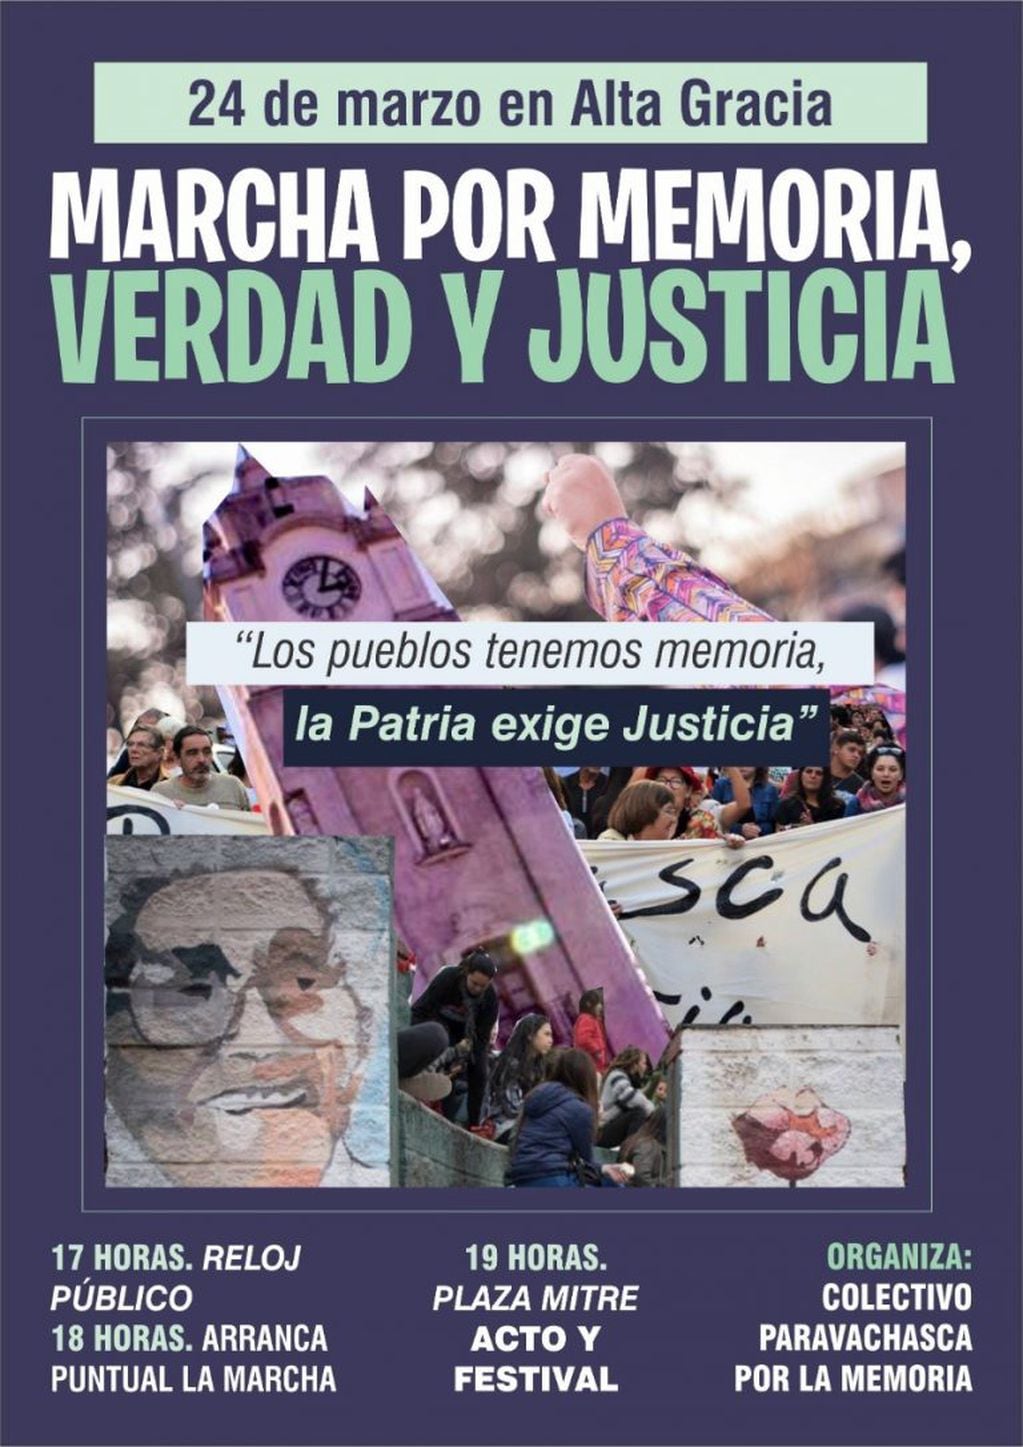 Marcha organizada por el Colectivo Paravachasca por la Memoria.